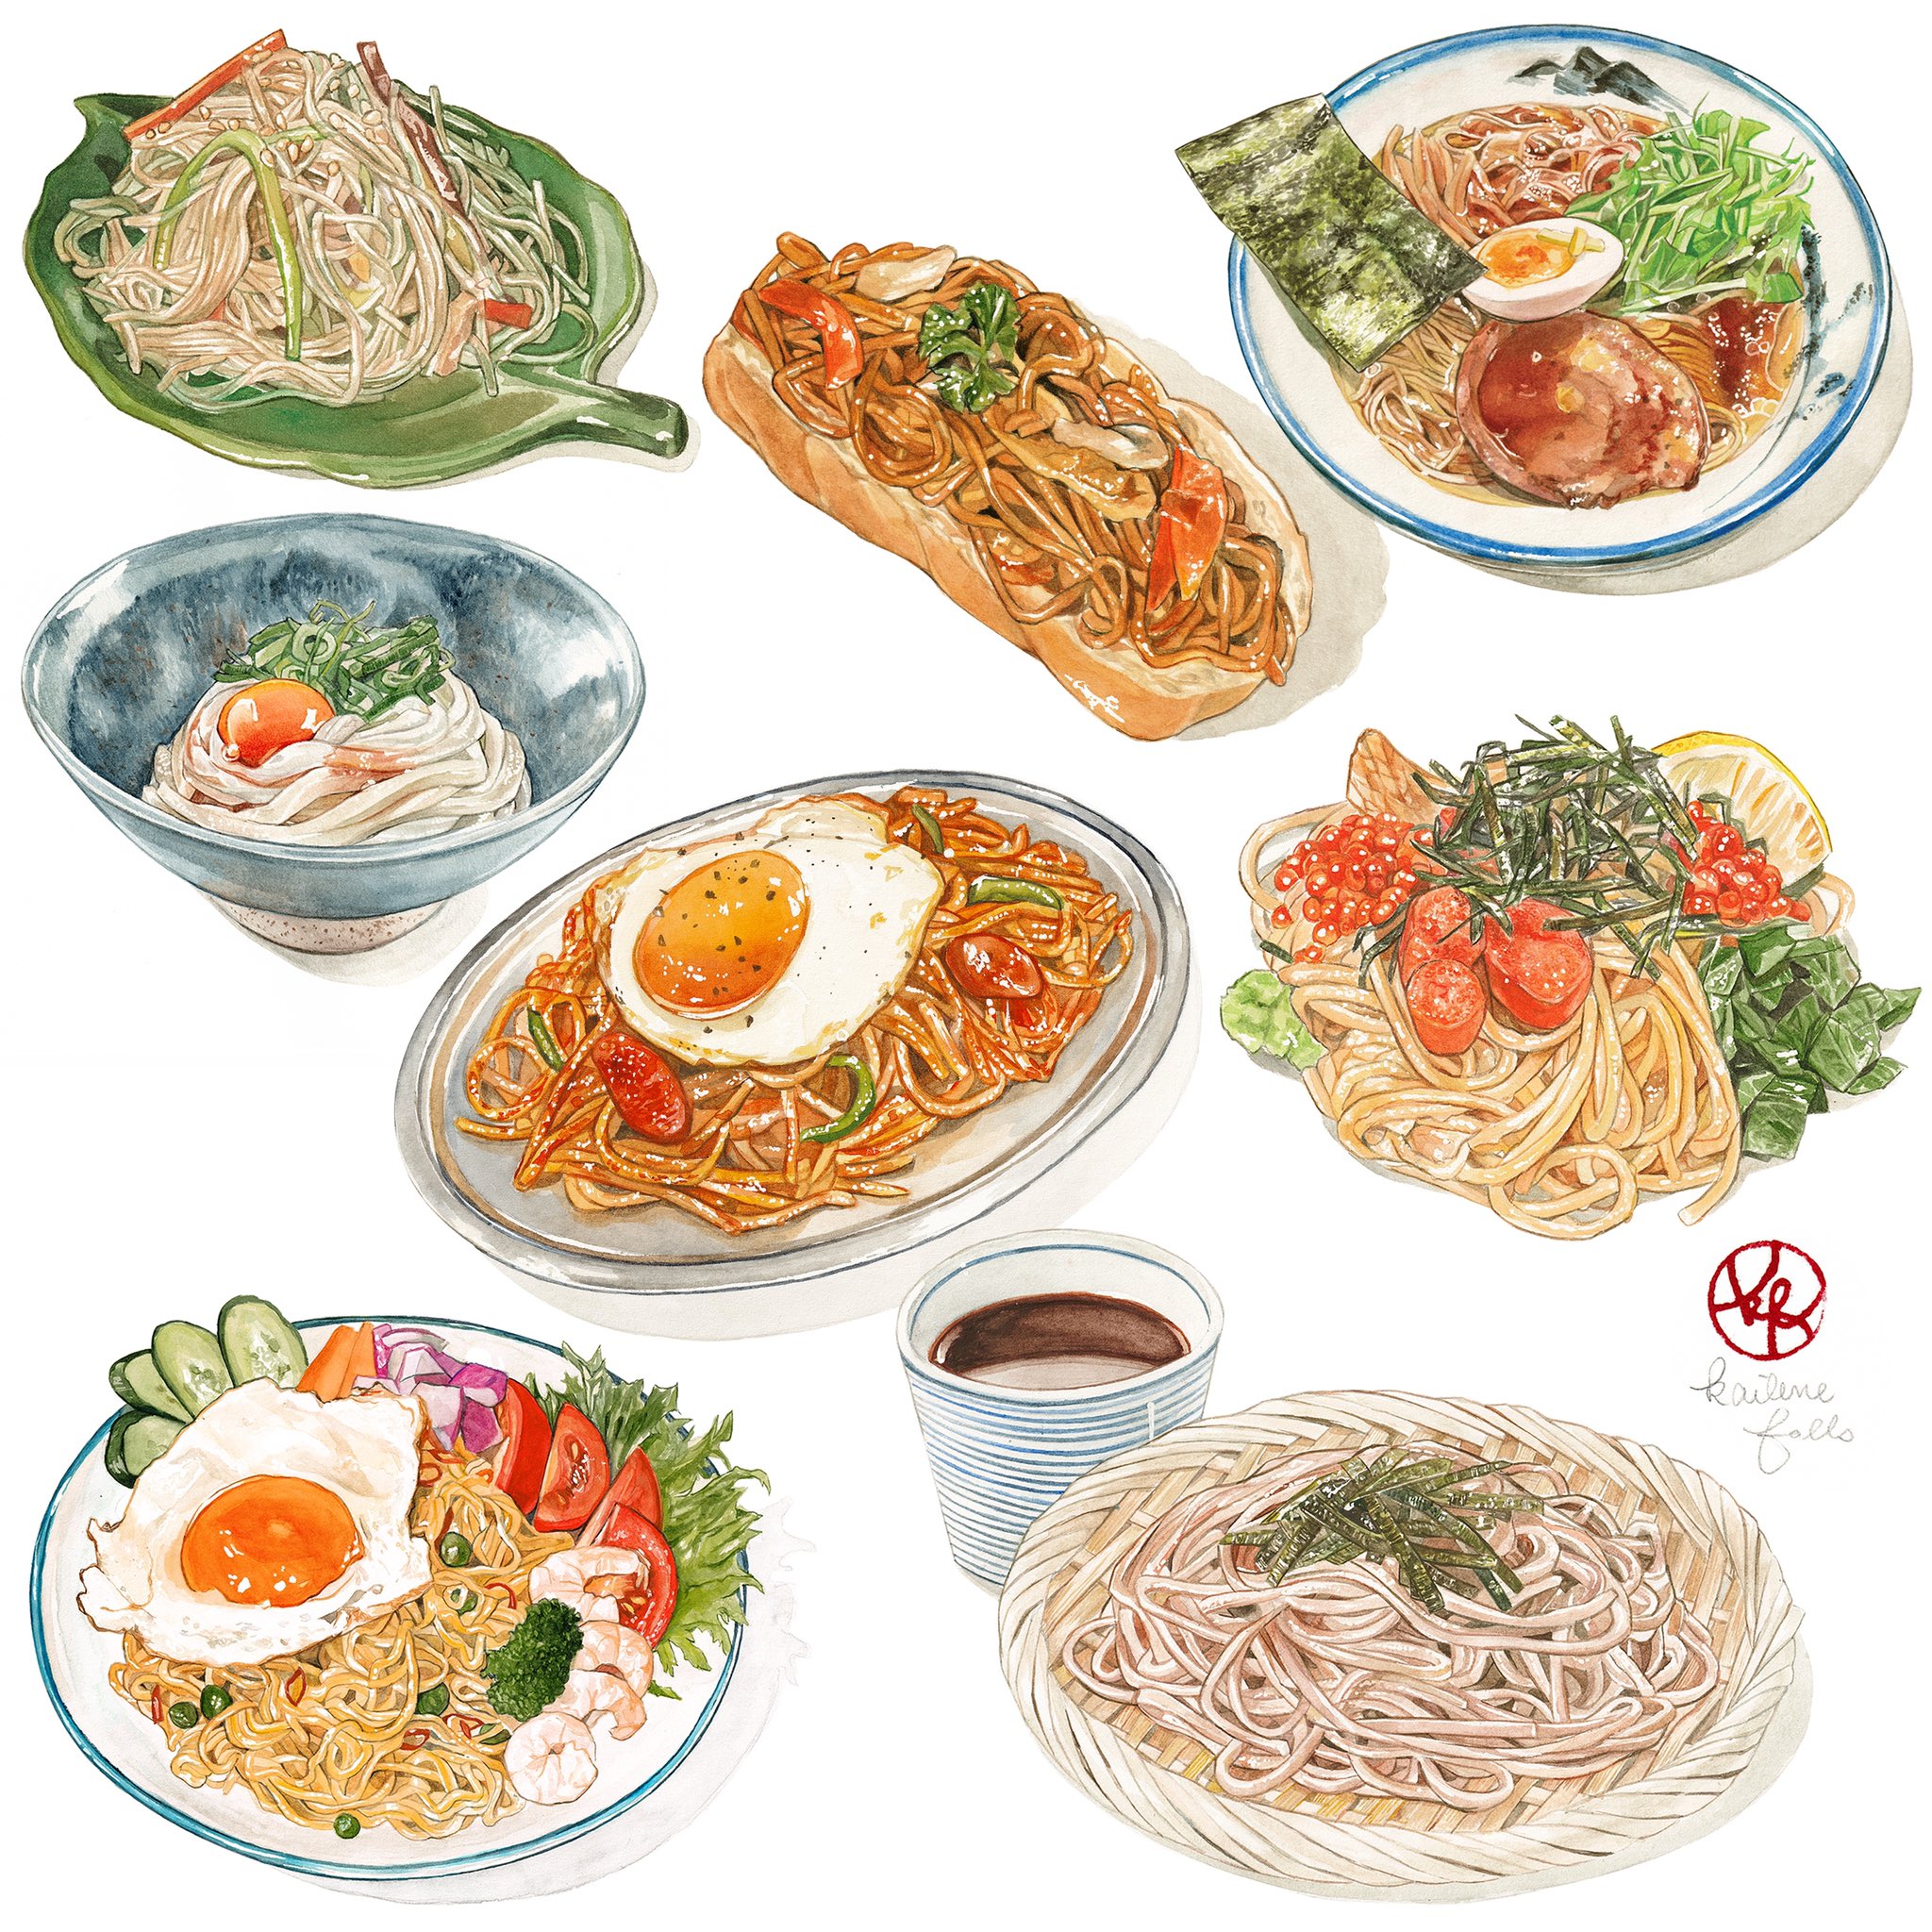 ケイリーン パスタと麺類のイラストをまとめました Pasta And Noodle Illustration Watercolor Foodillustration 透明水彩 T Co Ddbzz0vmqh Twitter